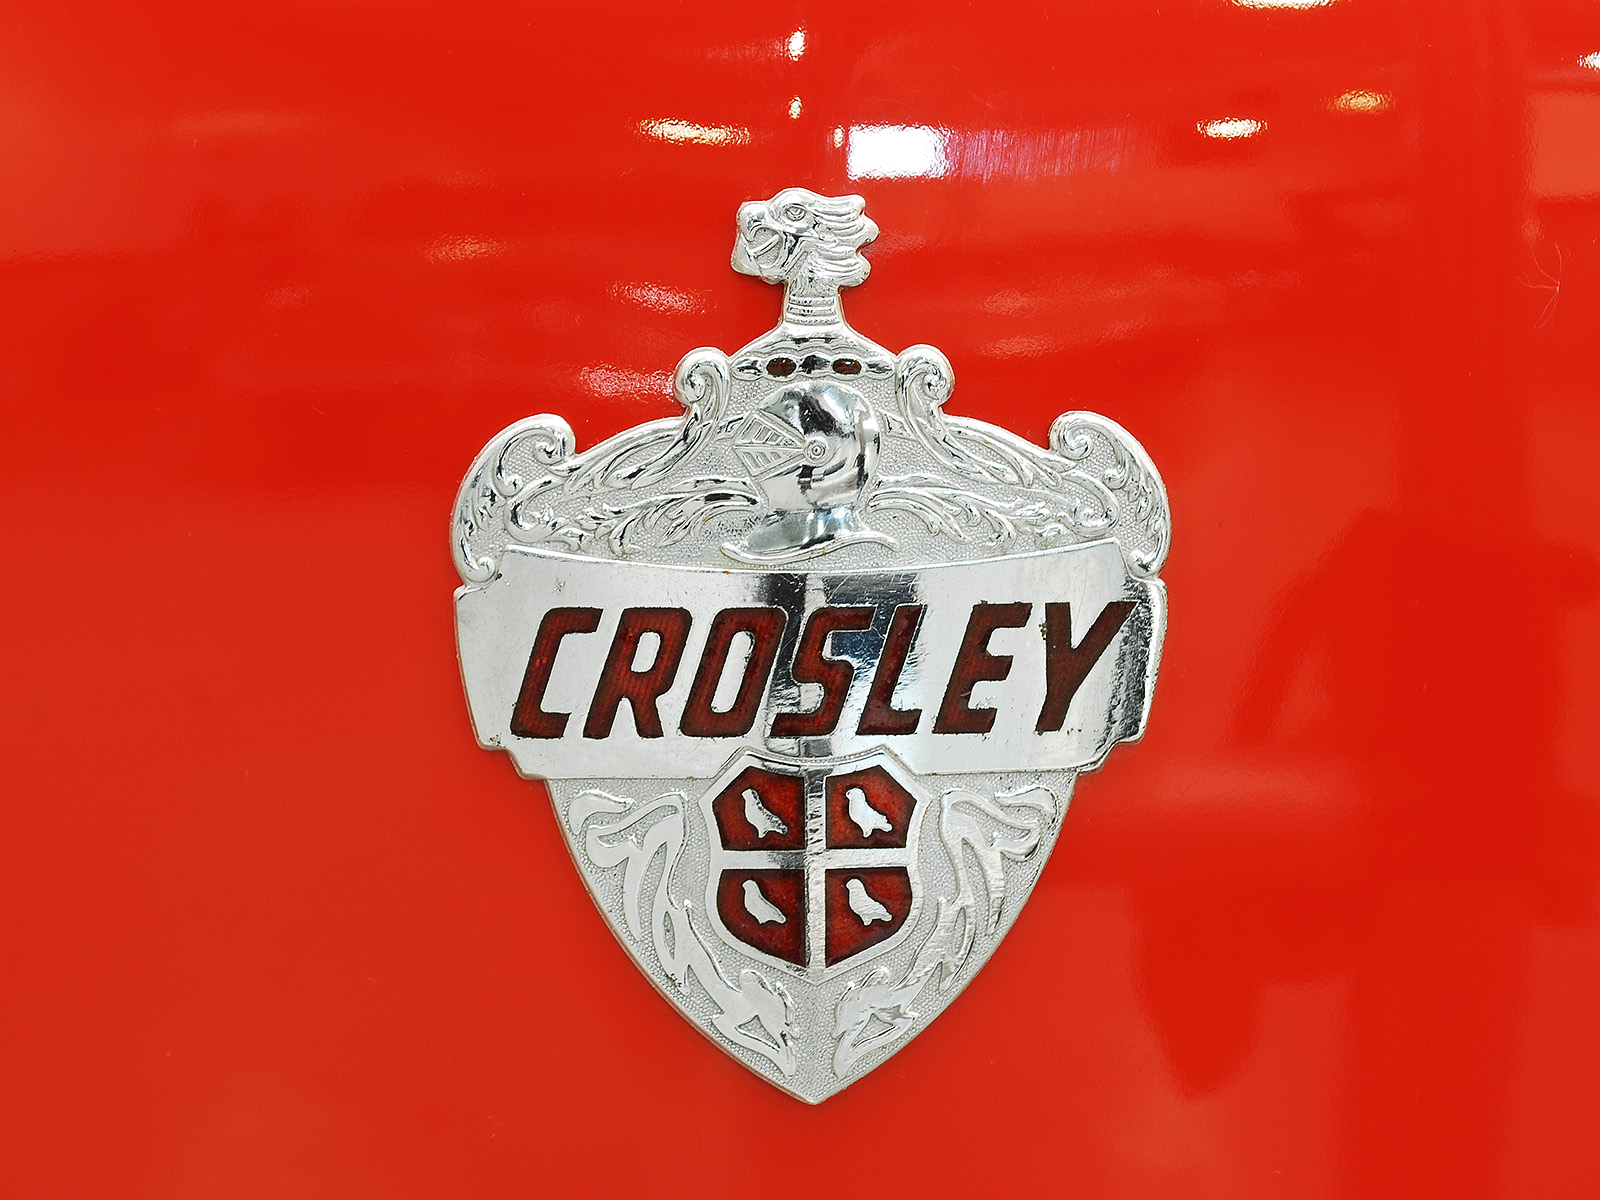 1949 Crosley CD